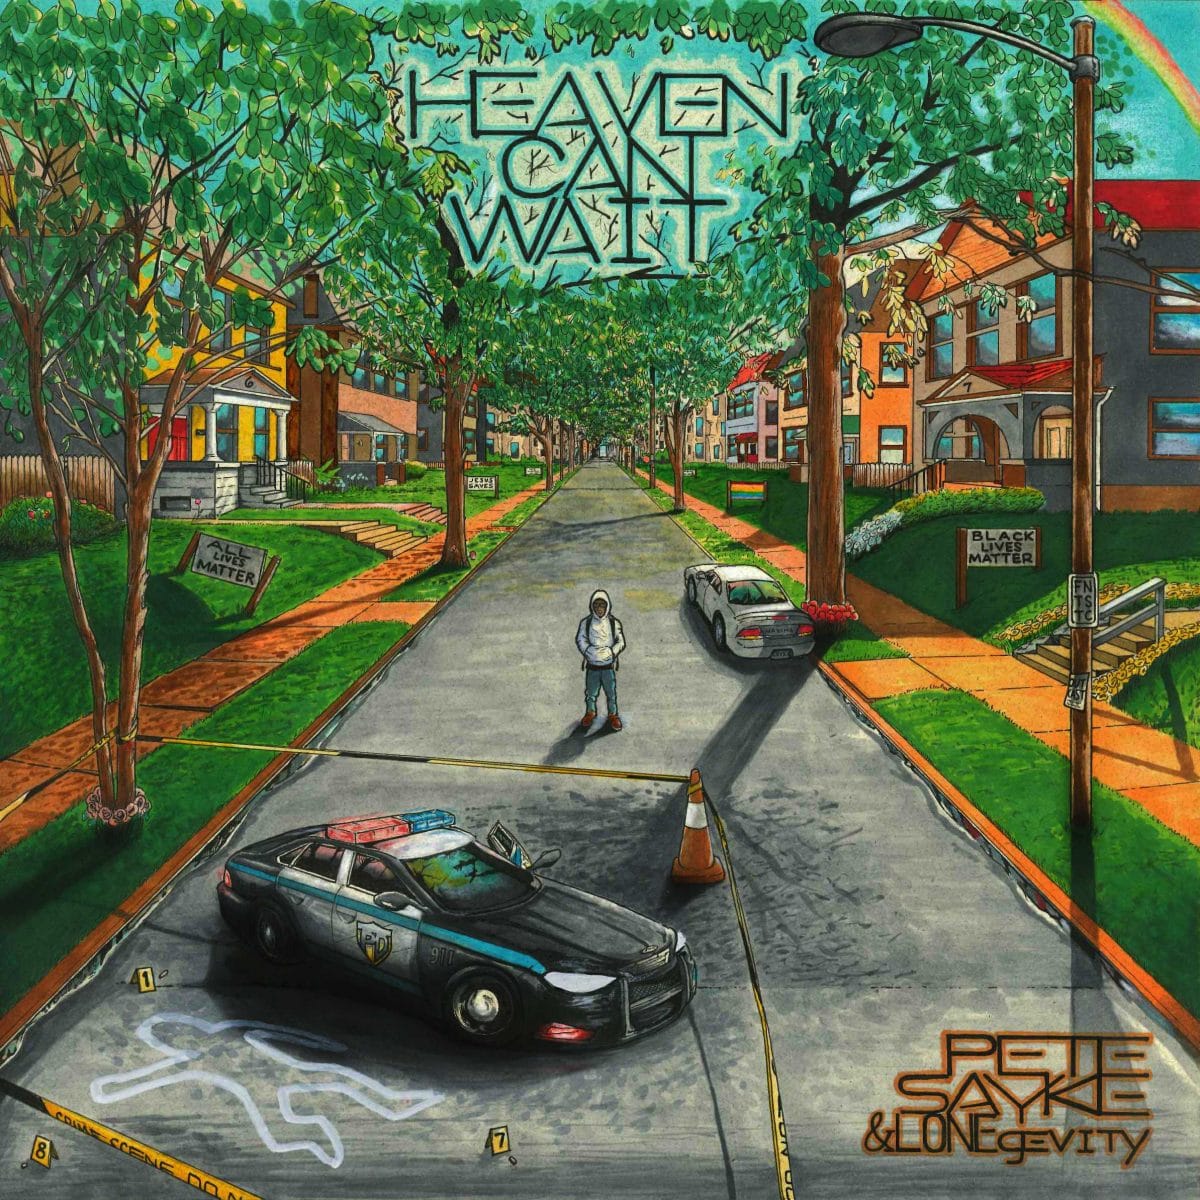 PREMIERE: Pete Sayke & Lonegevity - "Heaven Can Wait" (Release)